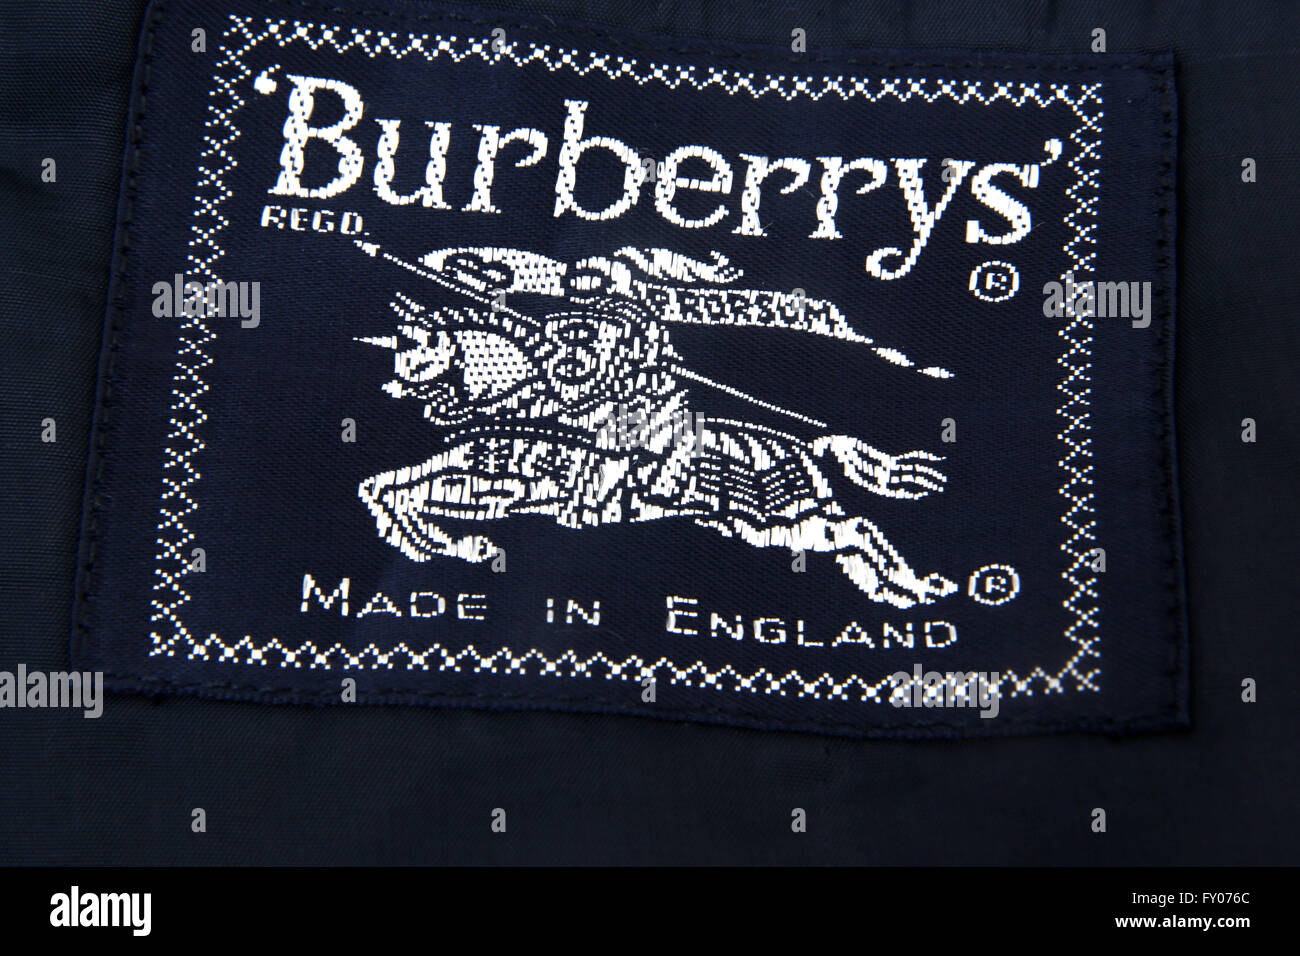 burberry etiqueta jacket